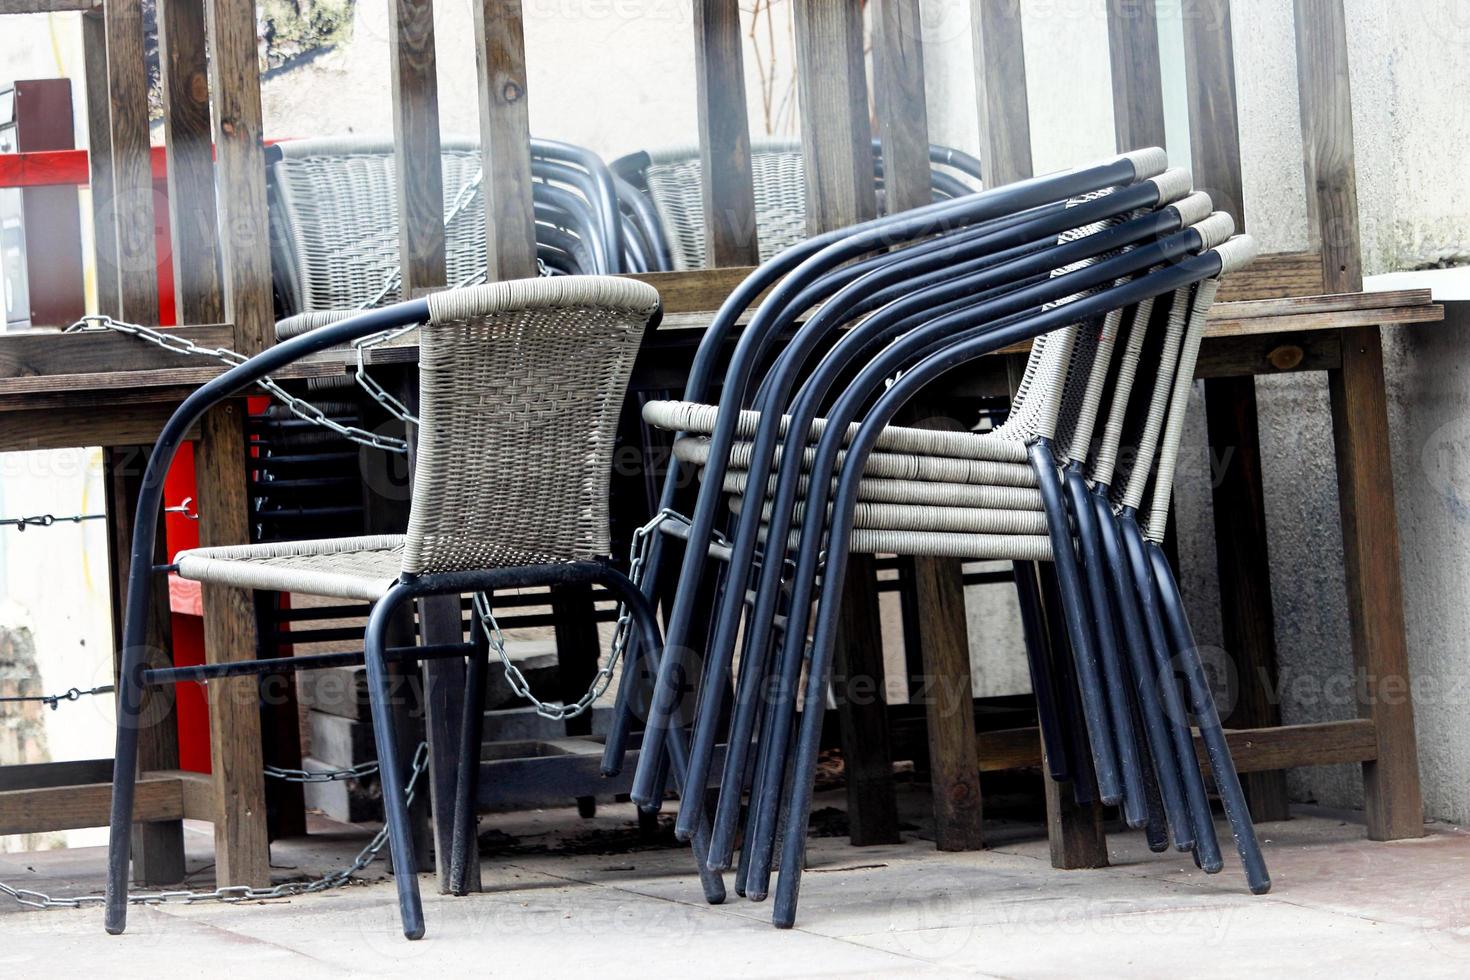 chaises empilées près des tables de café debout dans la rue photo